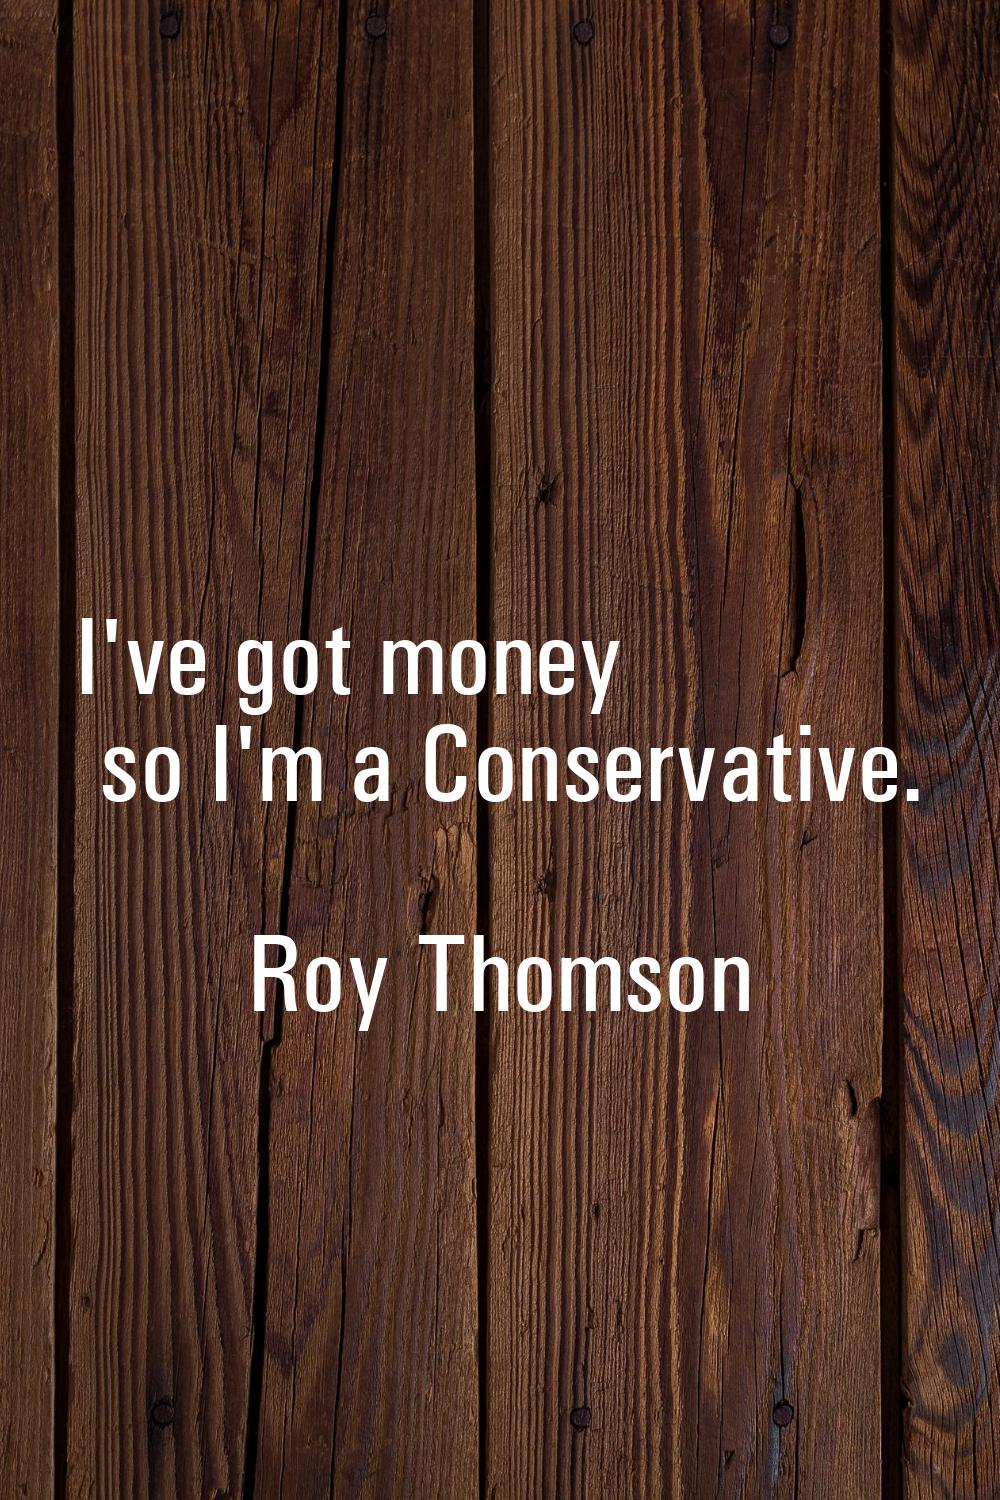 I've got money so I'm a Conservative.